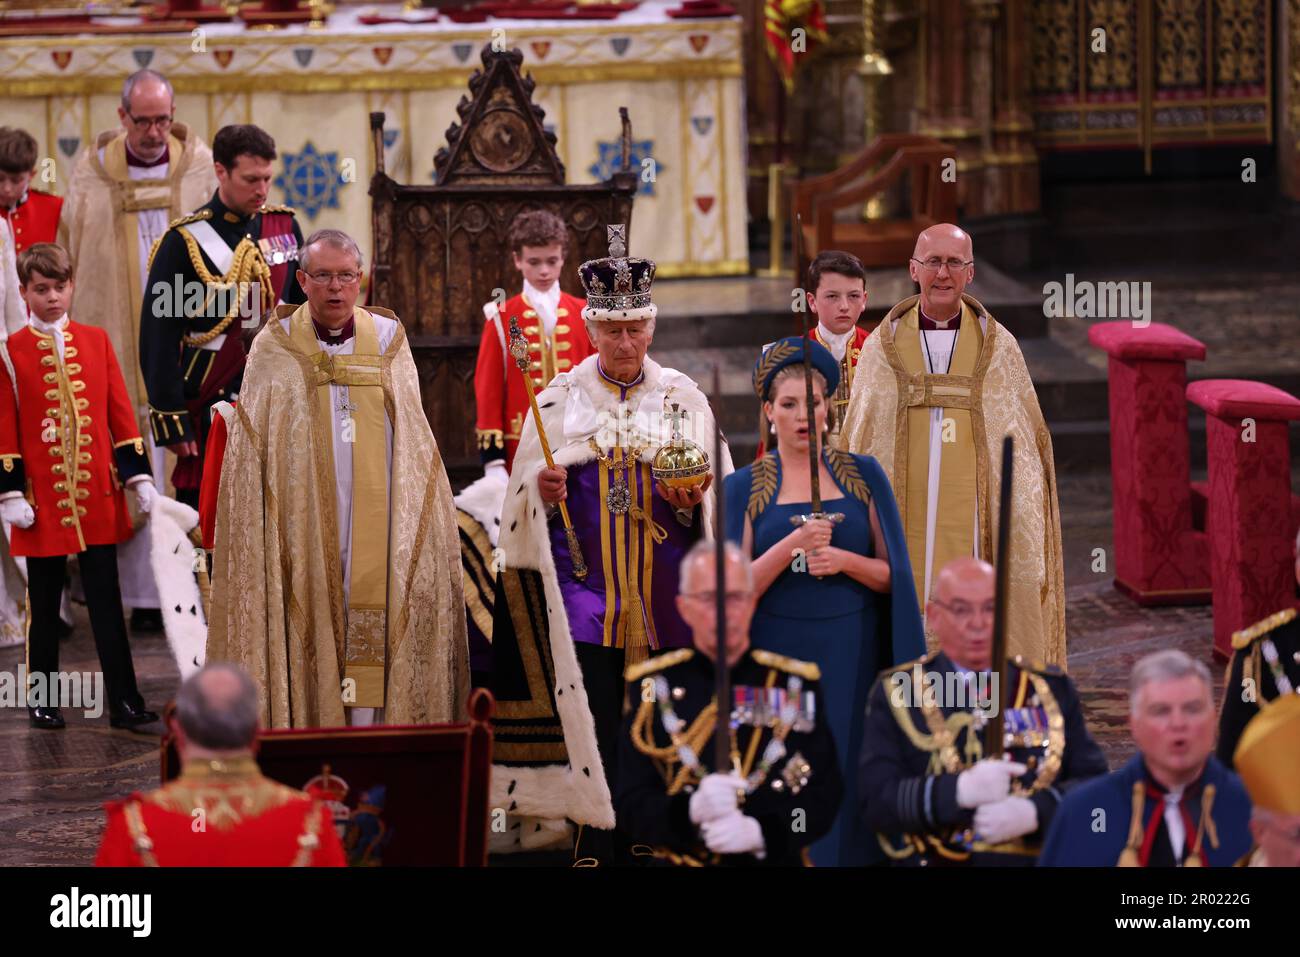 König Karl III. Mit dem Drehkörper des Herrschers, als Lord President des Rates, Penny Mordaunt, trägt das Schwert des Staates, während seiner Krönung in Westminster Abbey, London. Foto: Samstag, 6. Mai 2023. Stockfoto